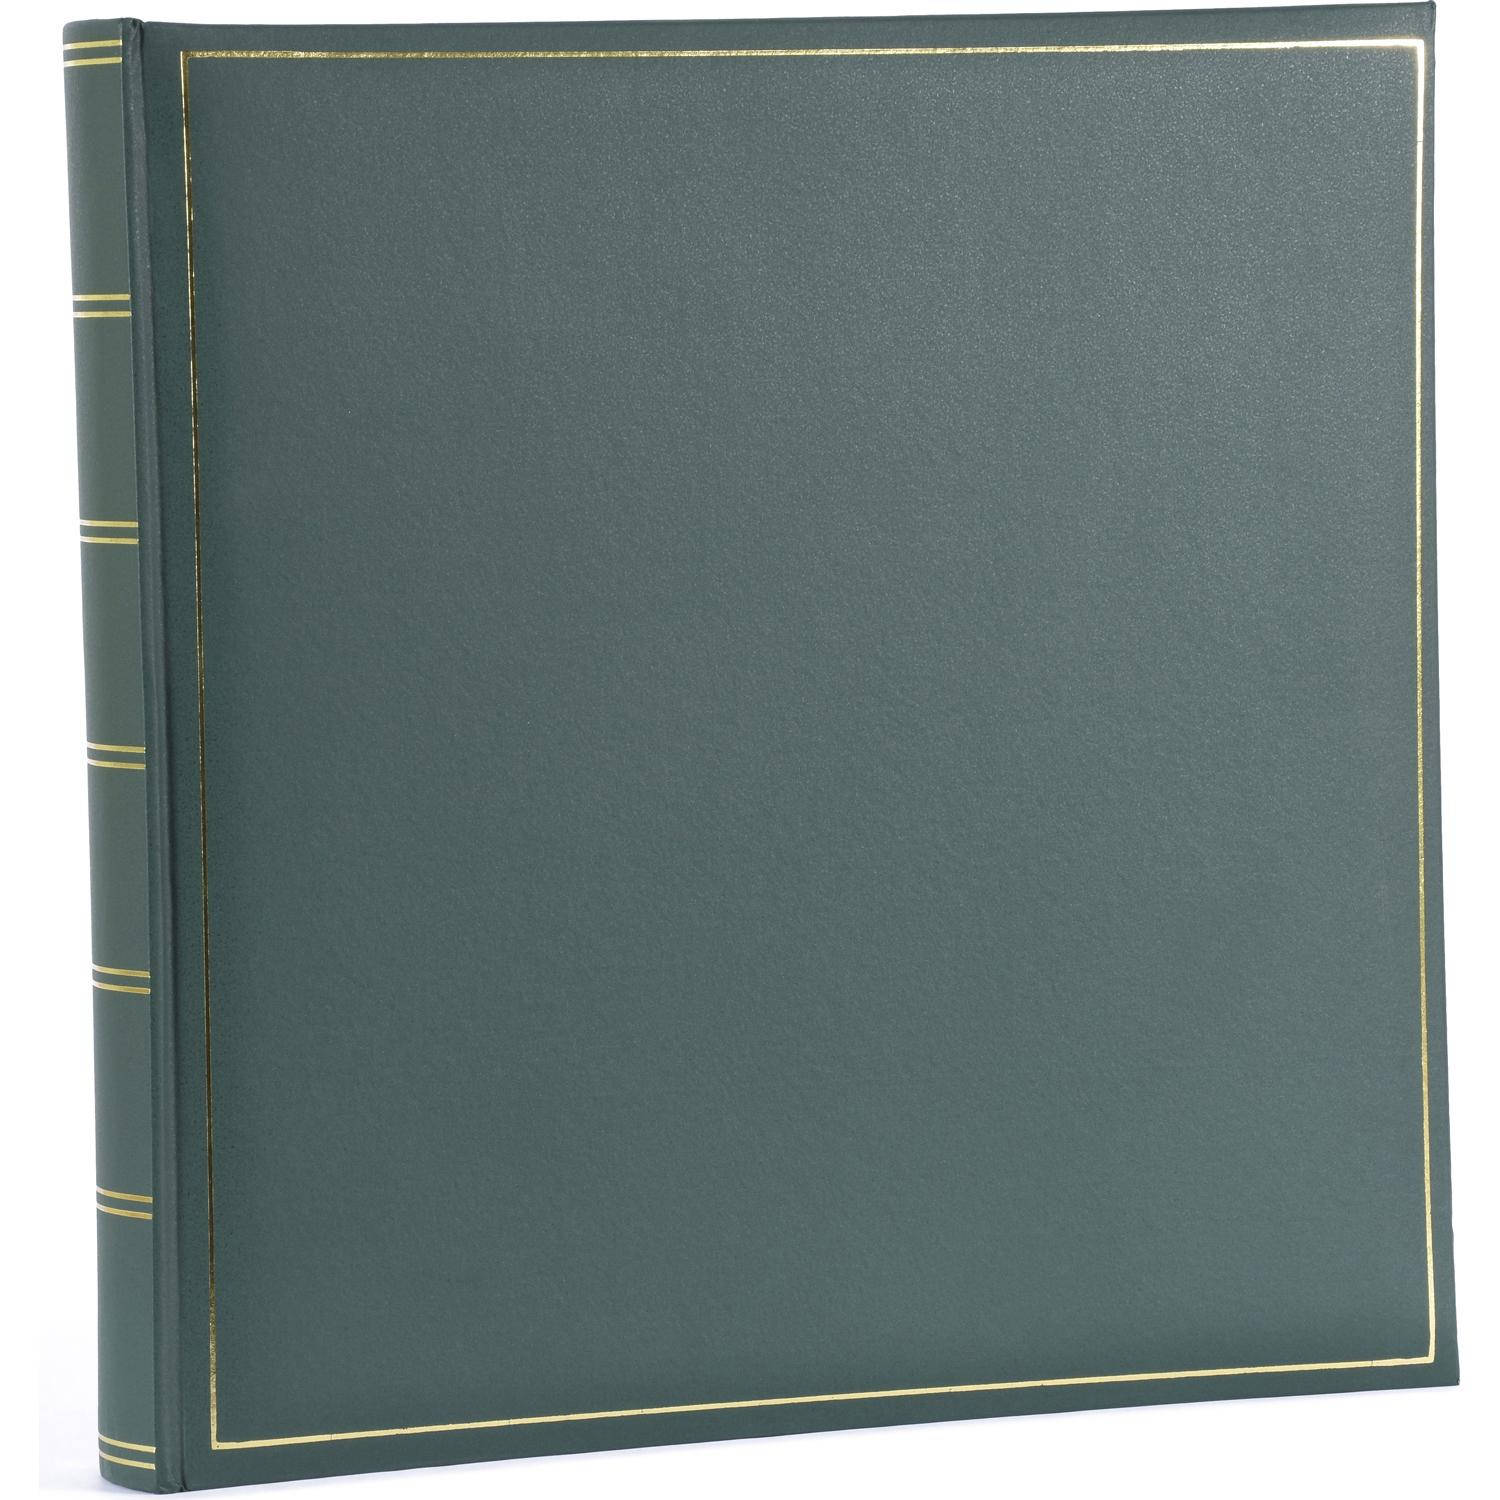 Henzo Henzo CHAMPAGNE groen 35x35 70 witte pagina's 1019801 (10.198.01)